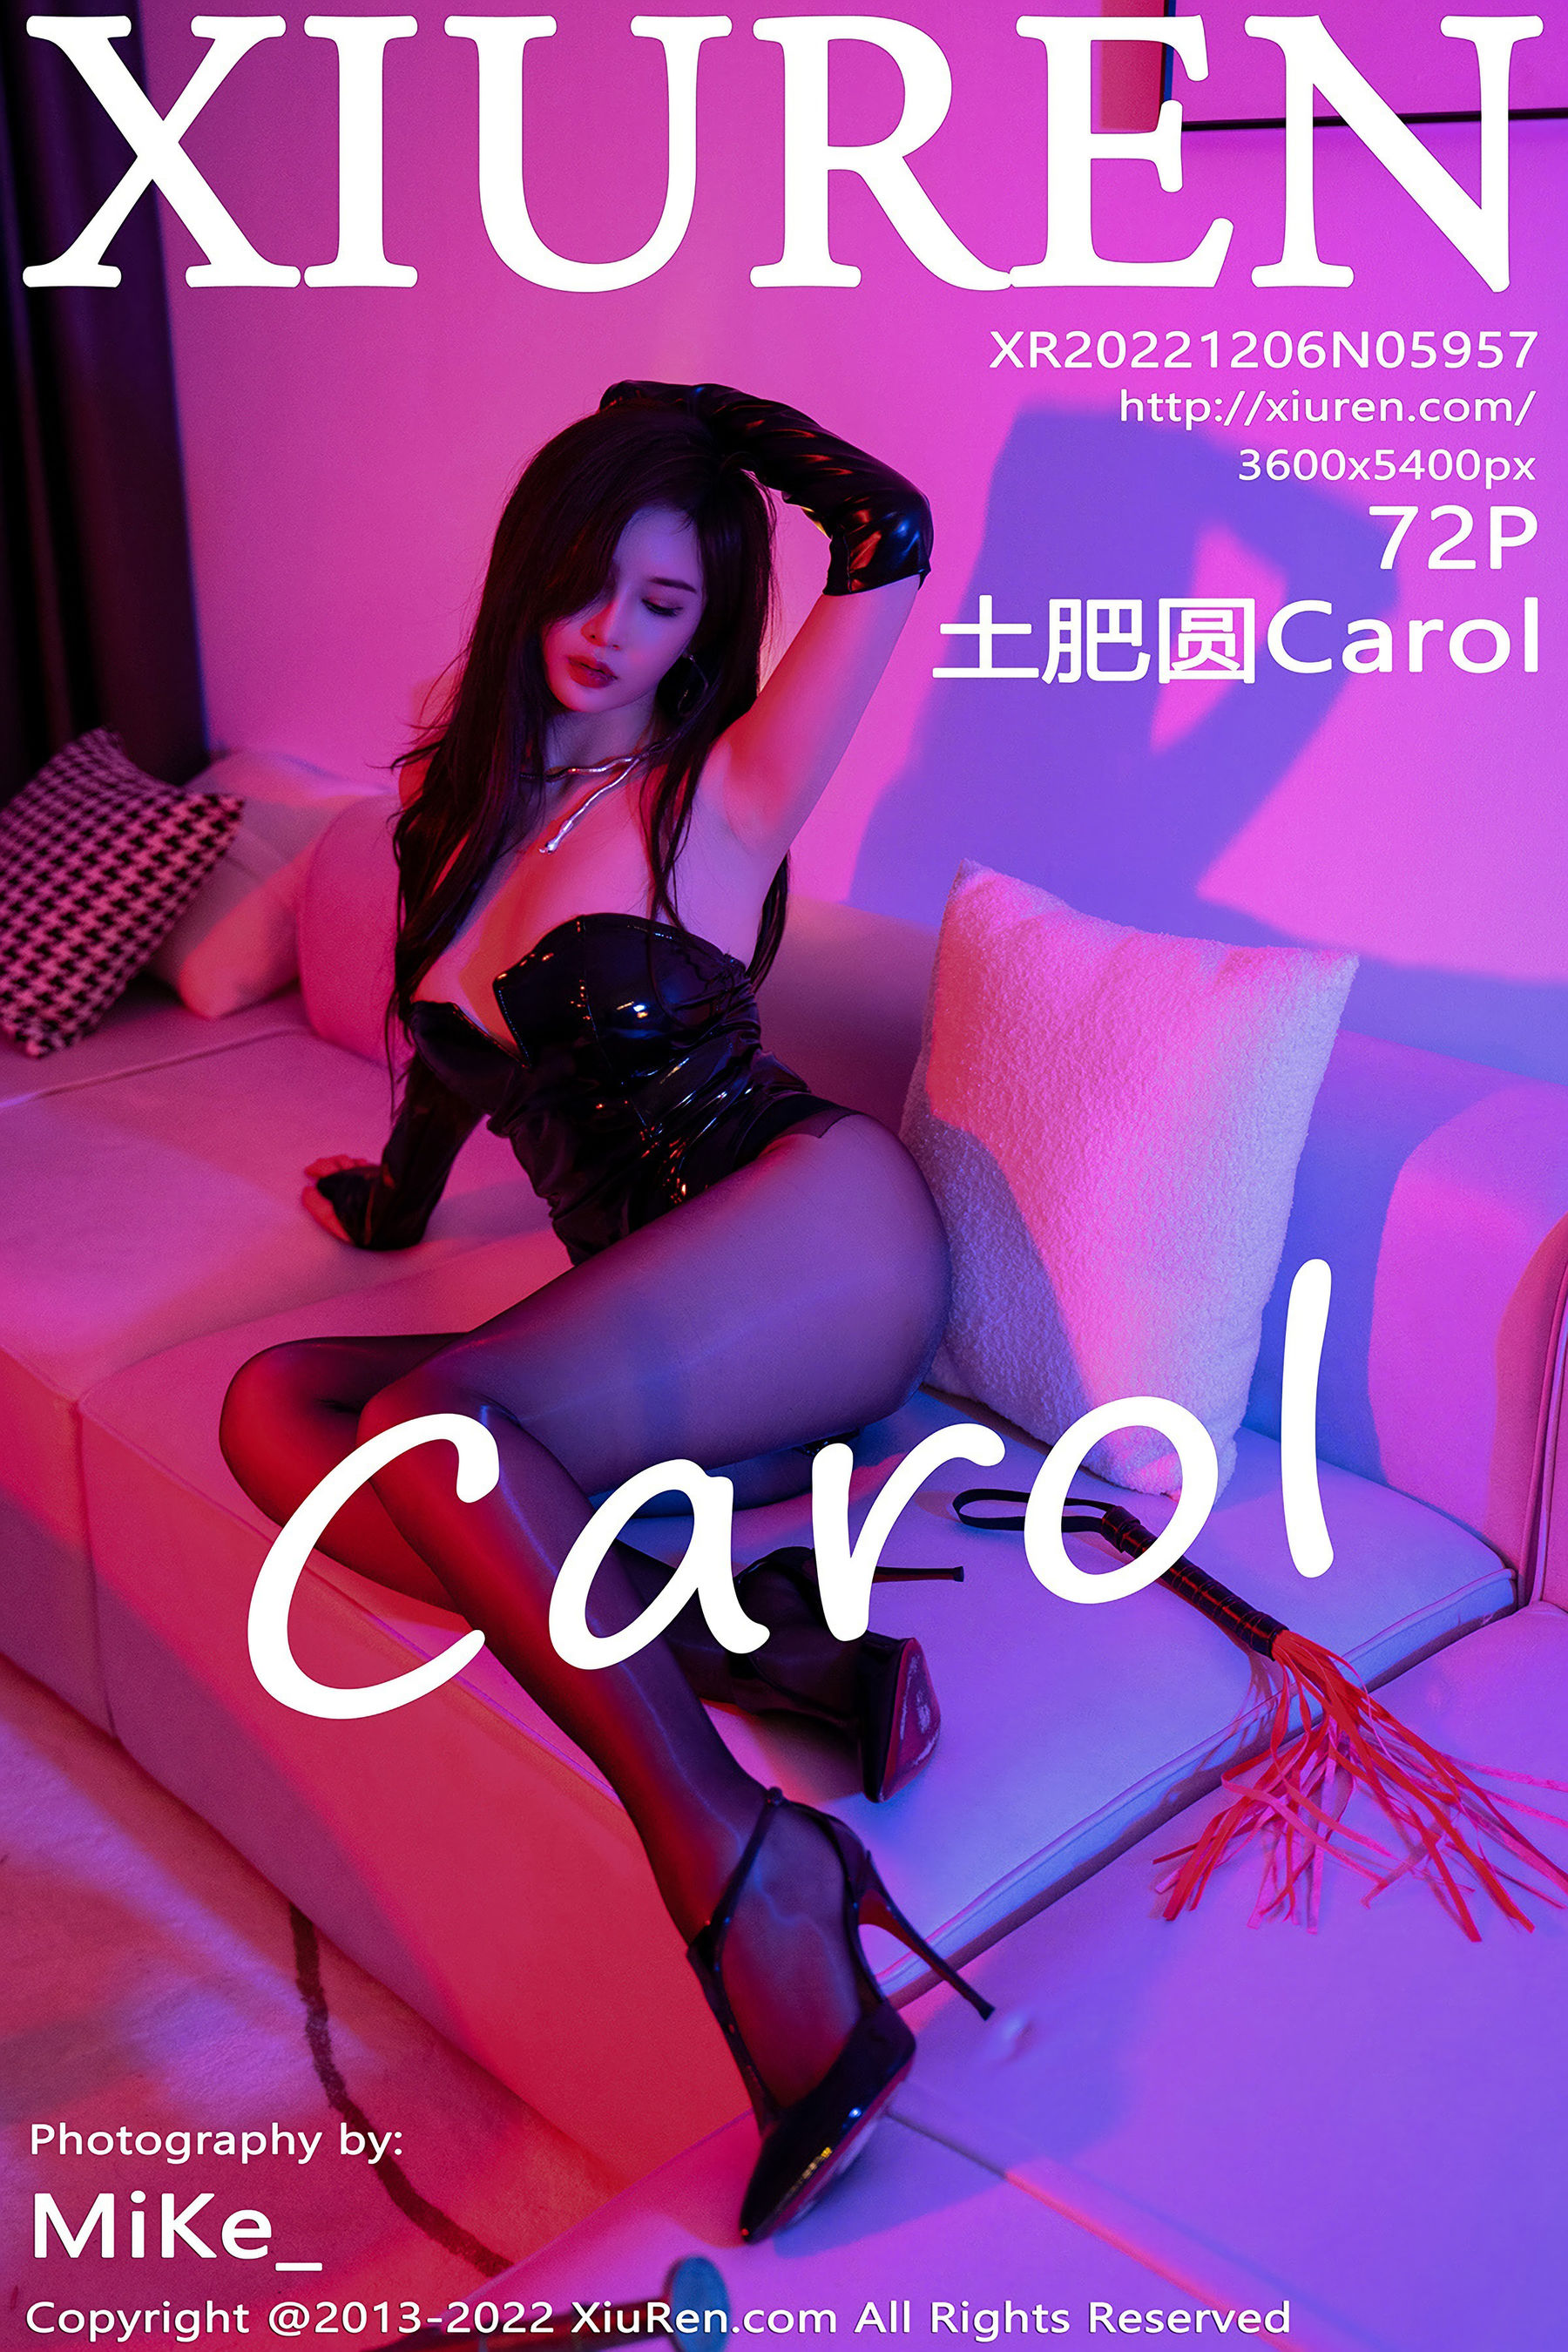 [秀人XiuRen] No.5957 土肥圆Carol1